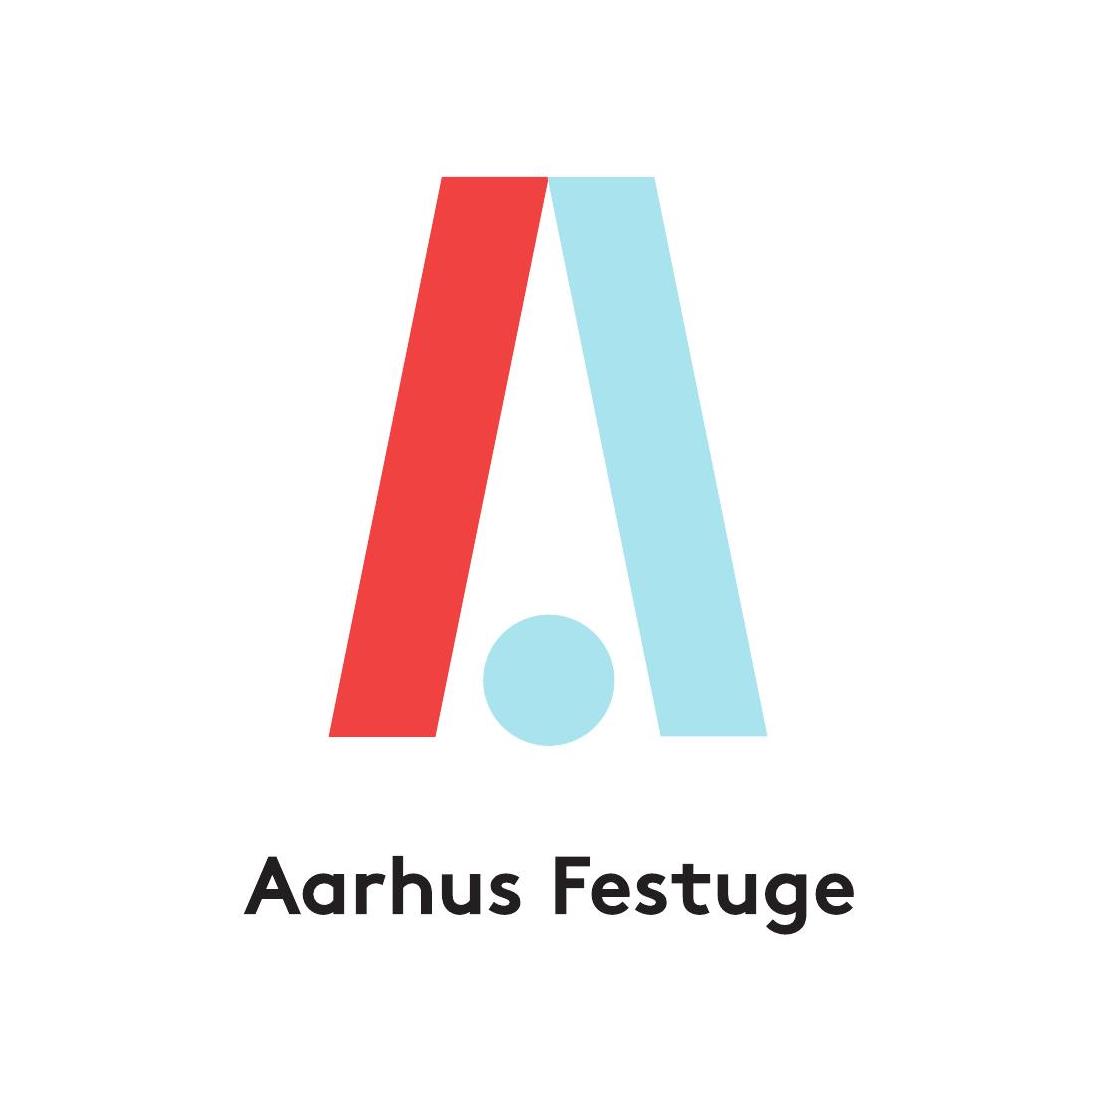 Aarhus_Festuge_logo